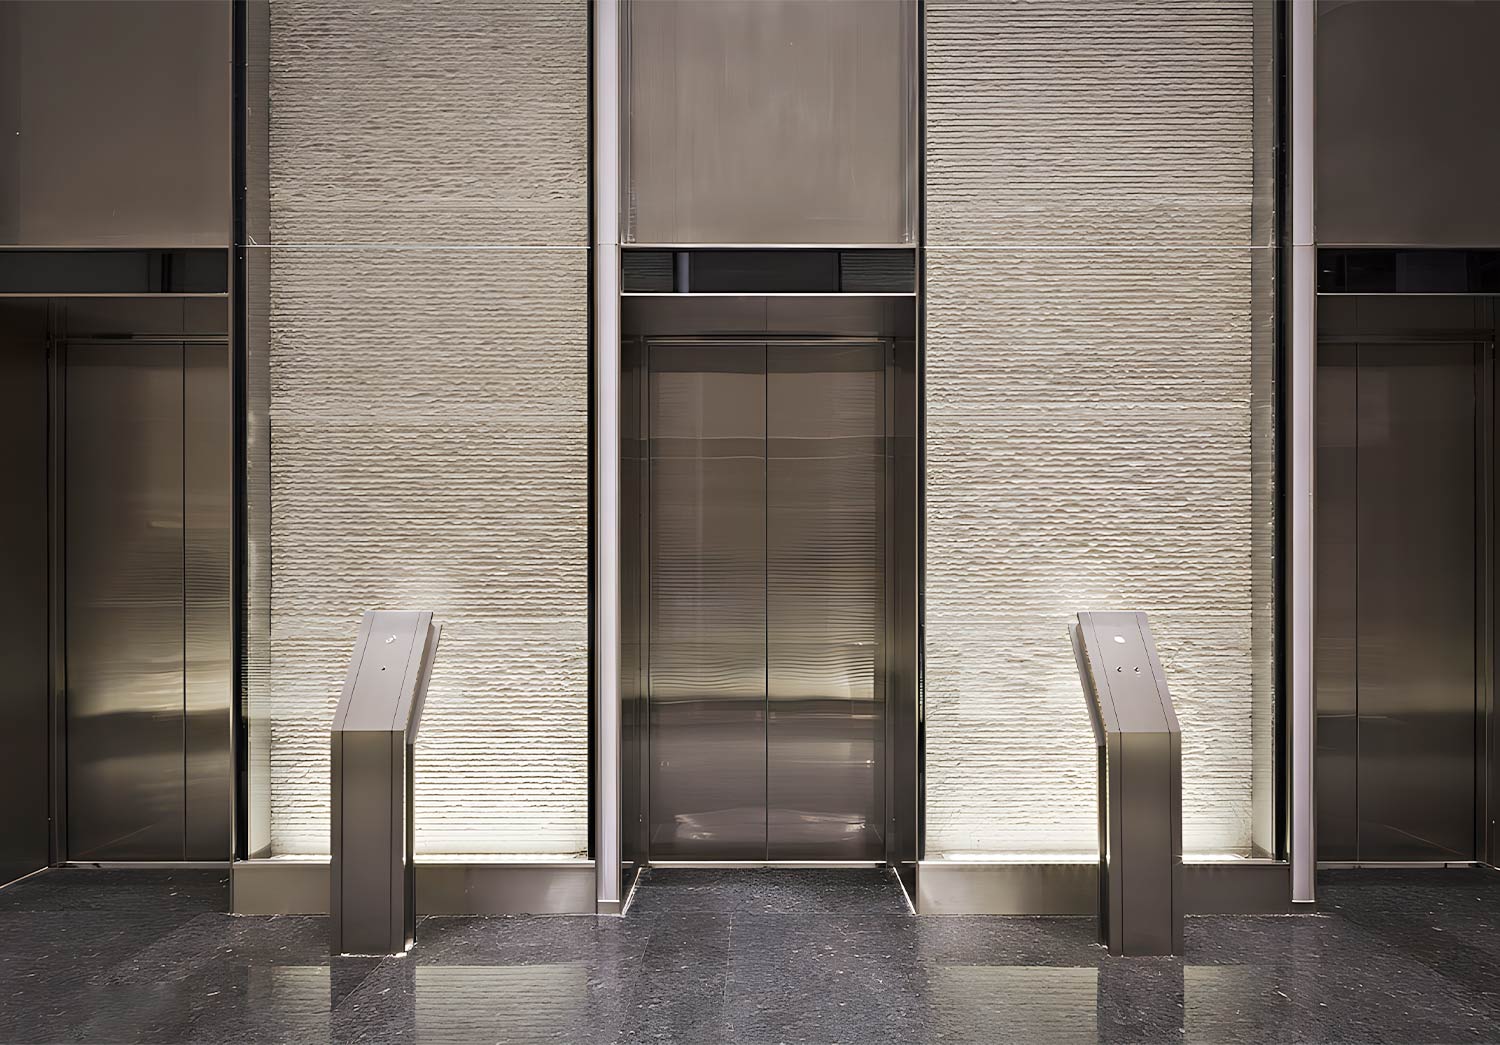 Mejore la impresión y cree un estilo único: el encanto de las láminas decorativas para puertas de ascensores